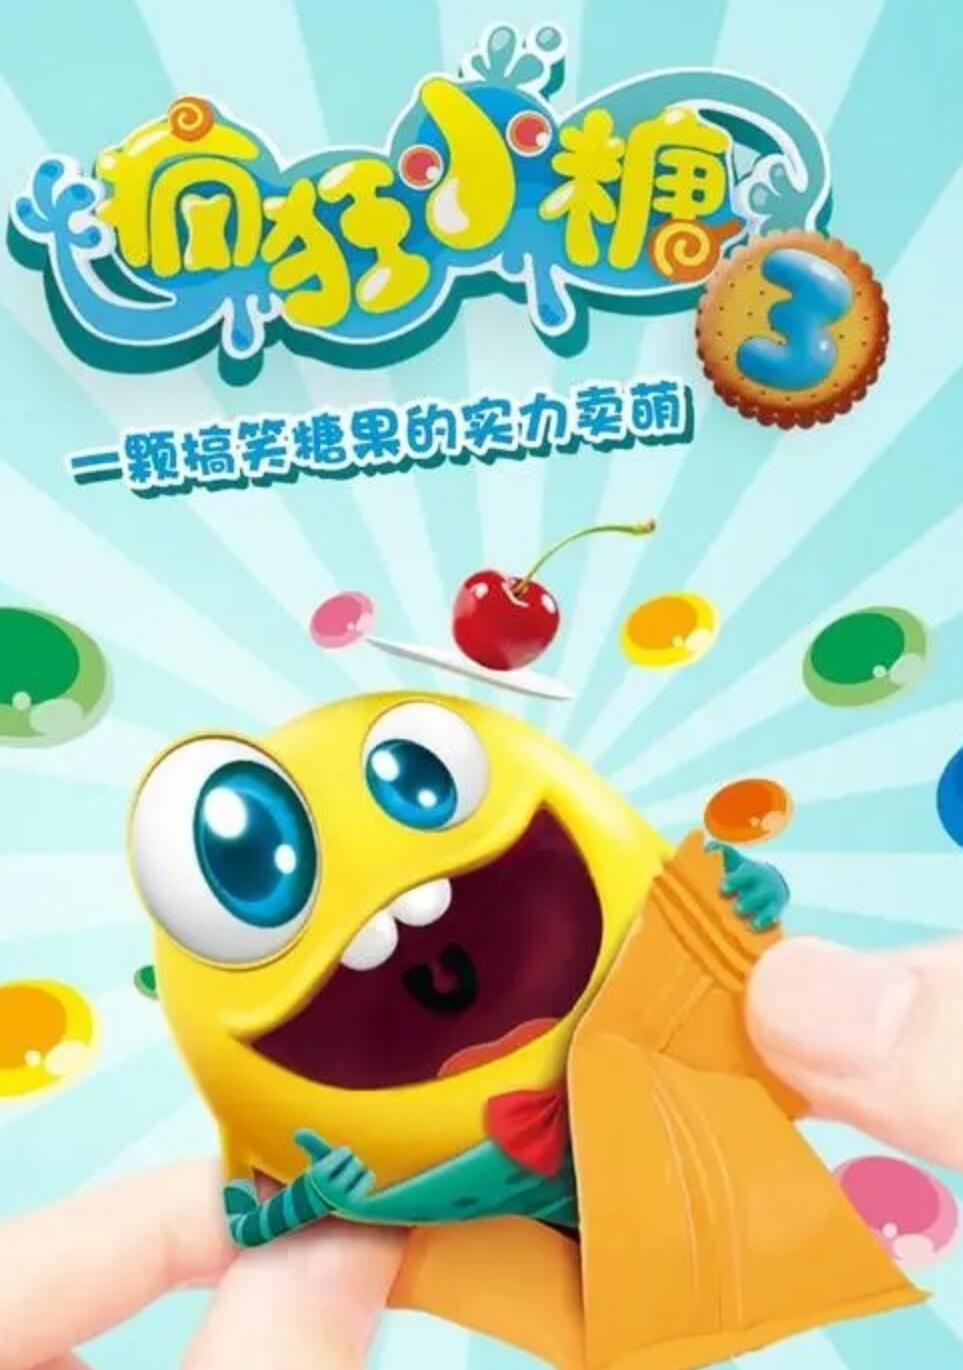 儿童搞笑益智动画片《疯狂小糖》第三季全52集下载 mp4高清720p 国语中字